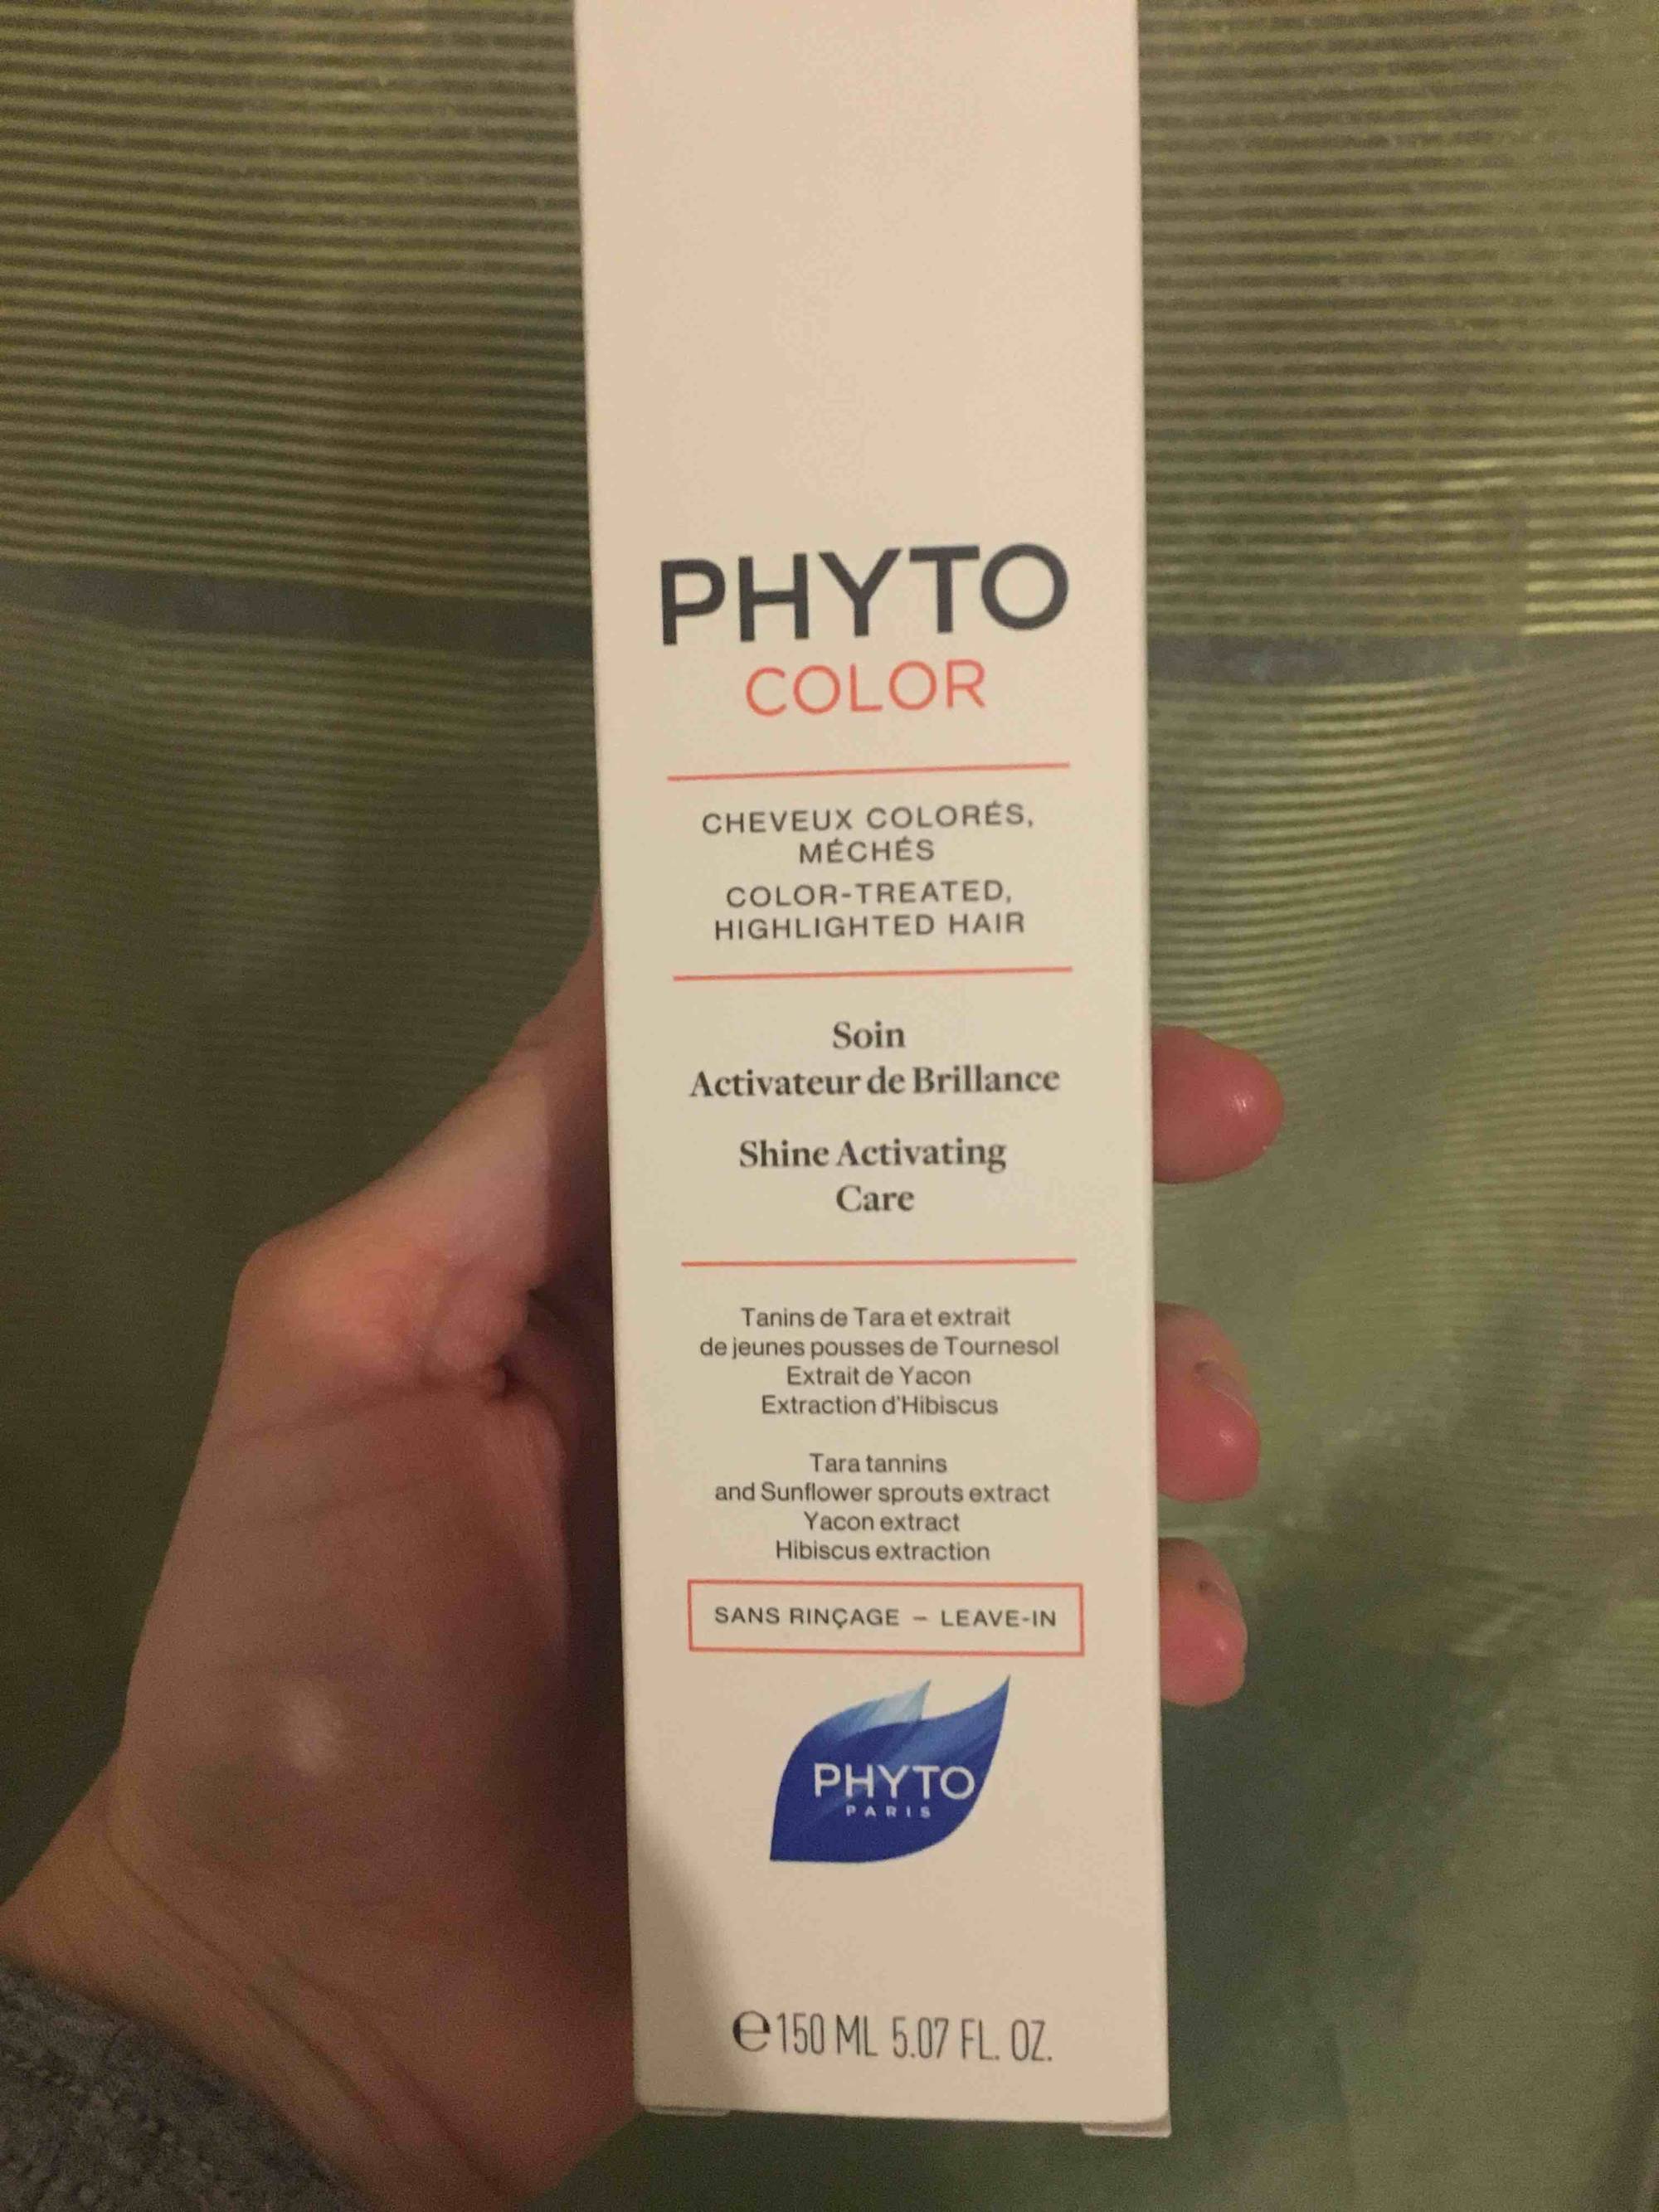 PHYTO - Phyto color - Soin activateur de brillance